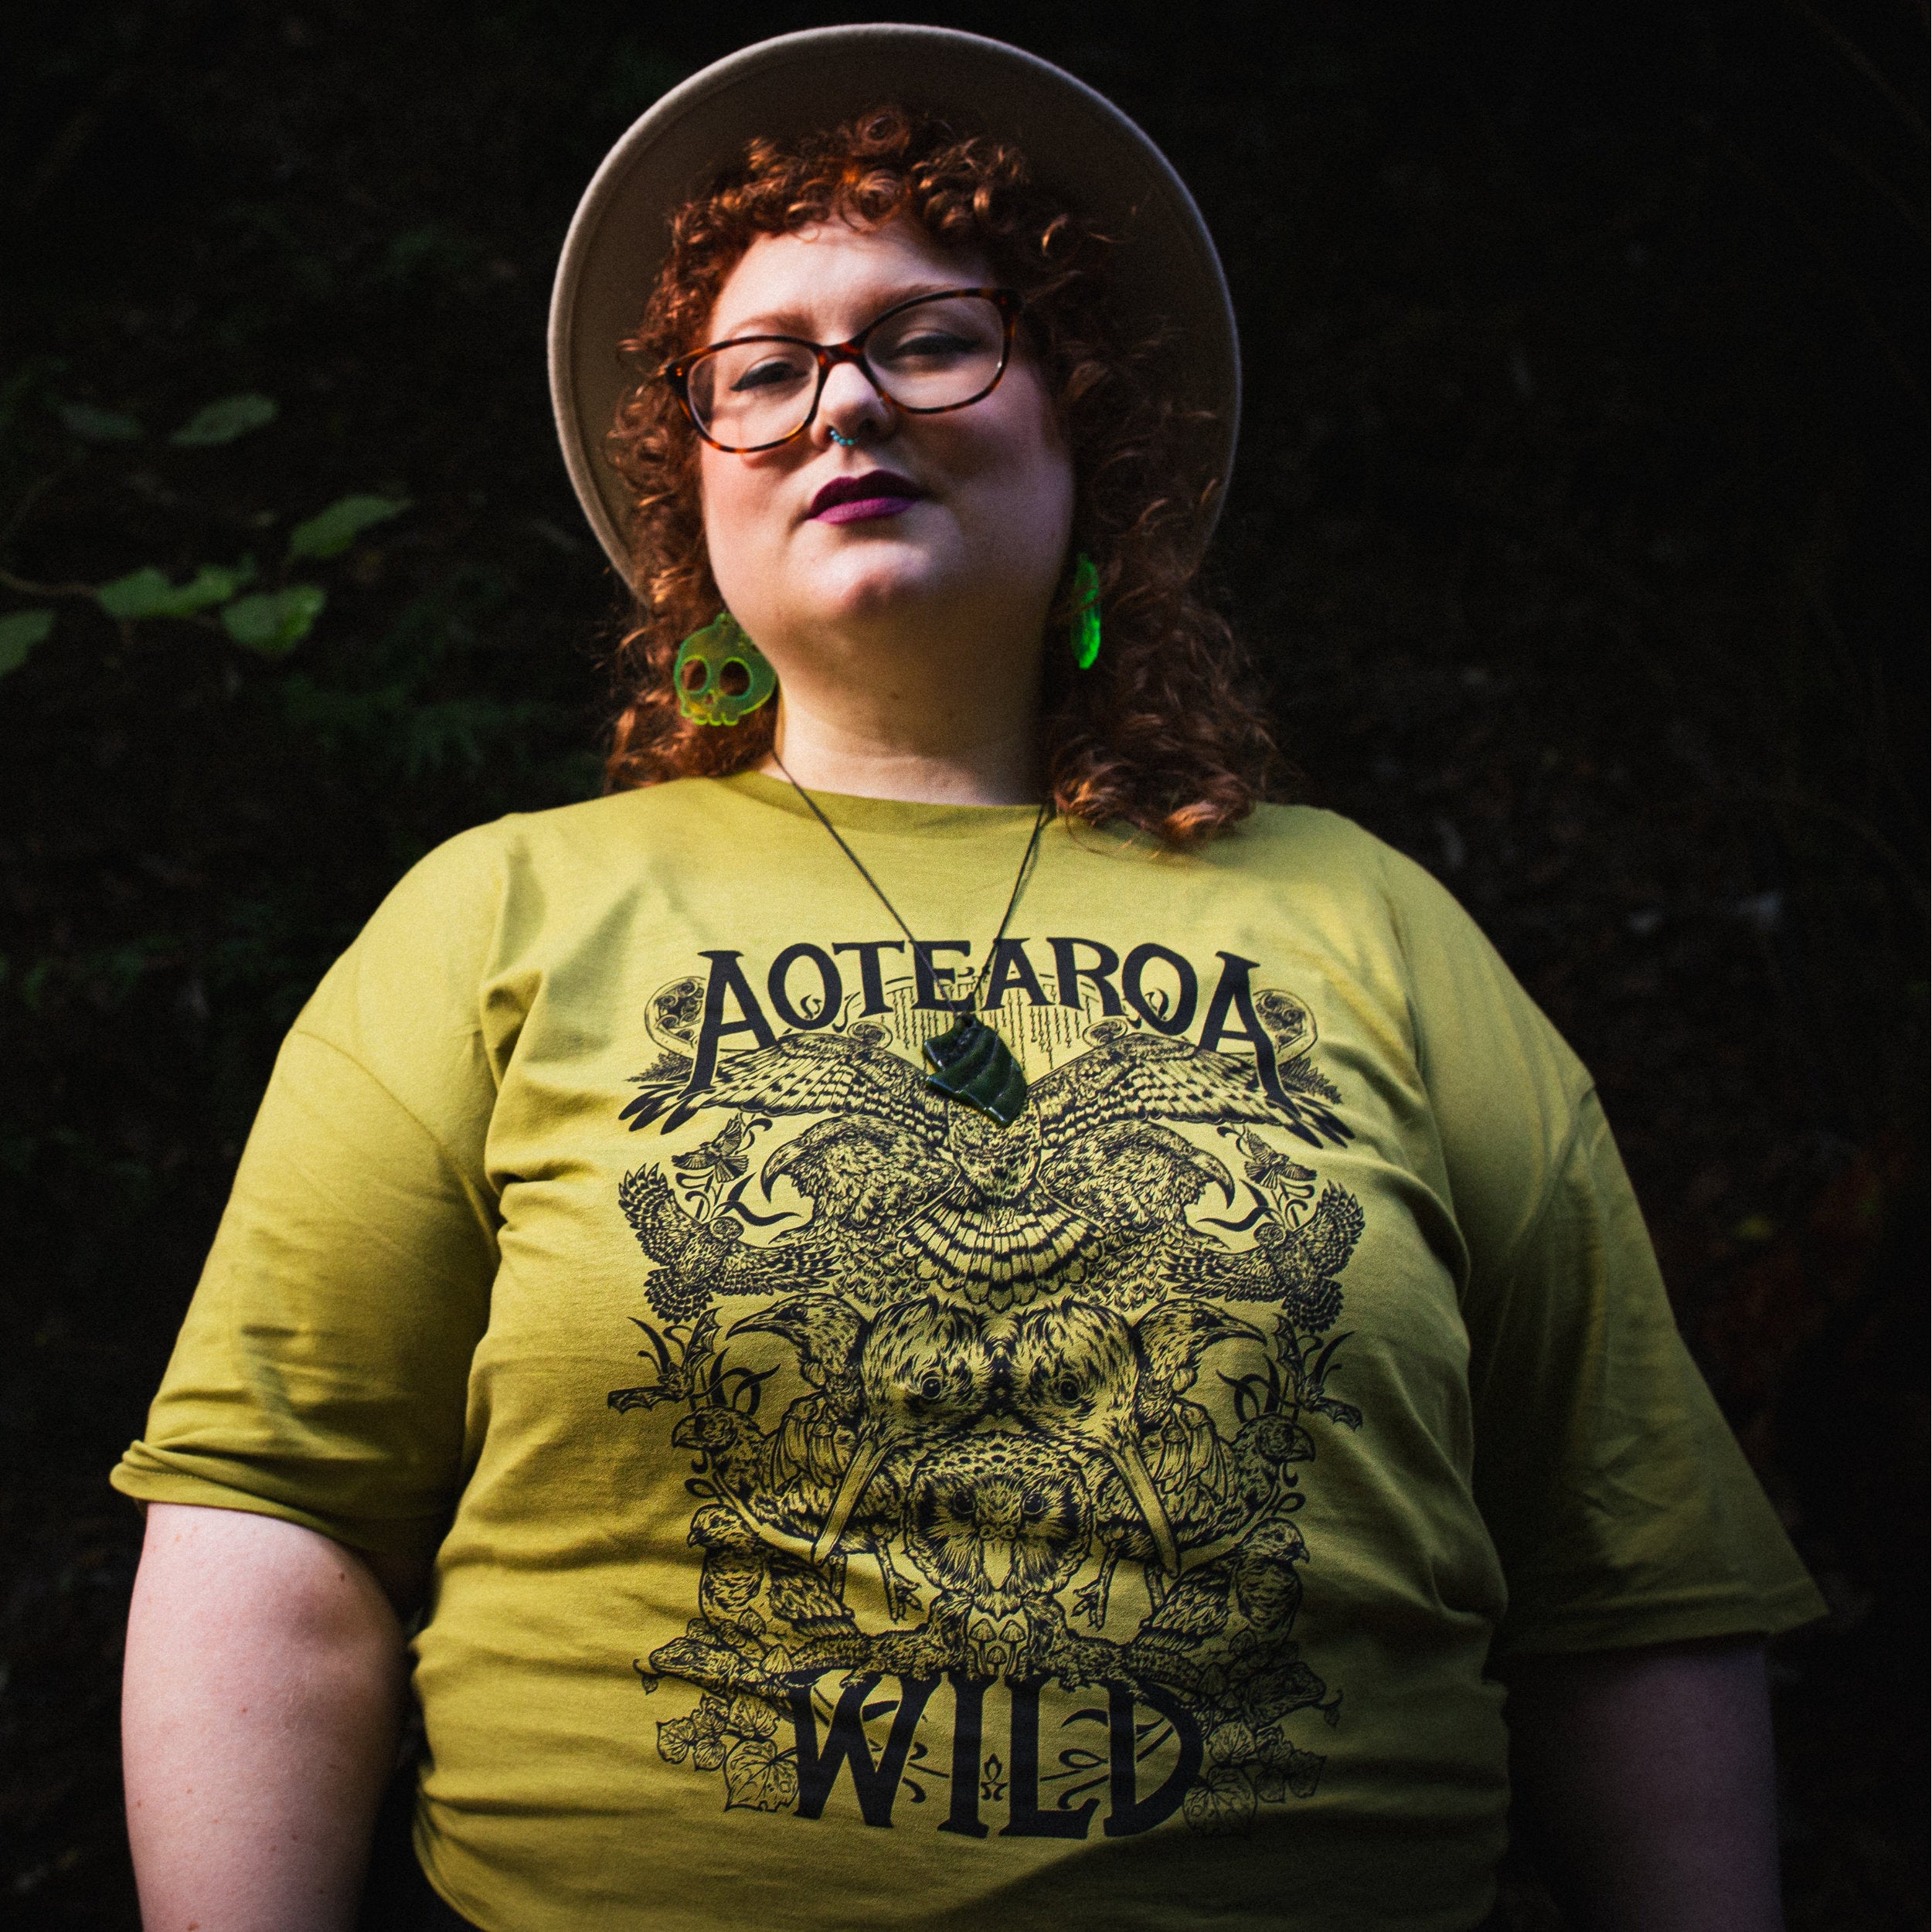 Aotearoa Wild T-Shirt